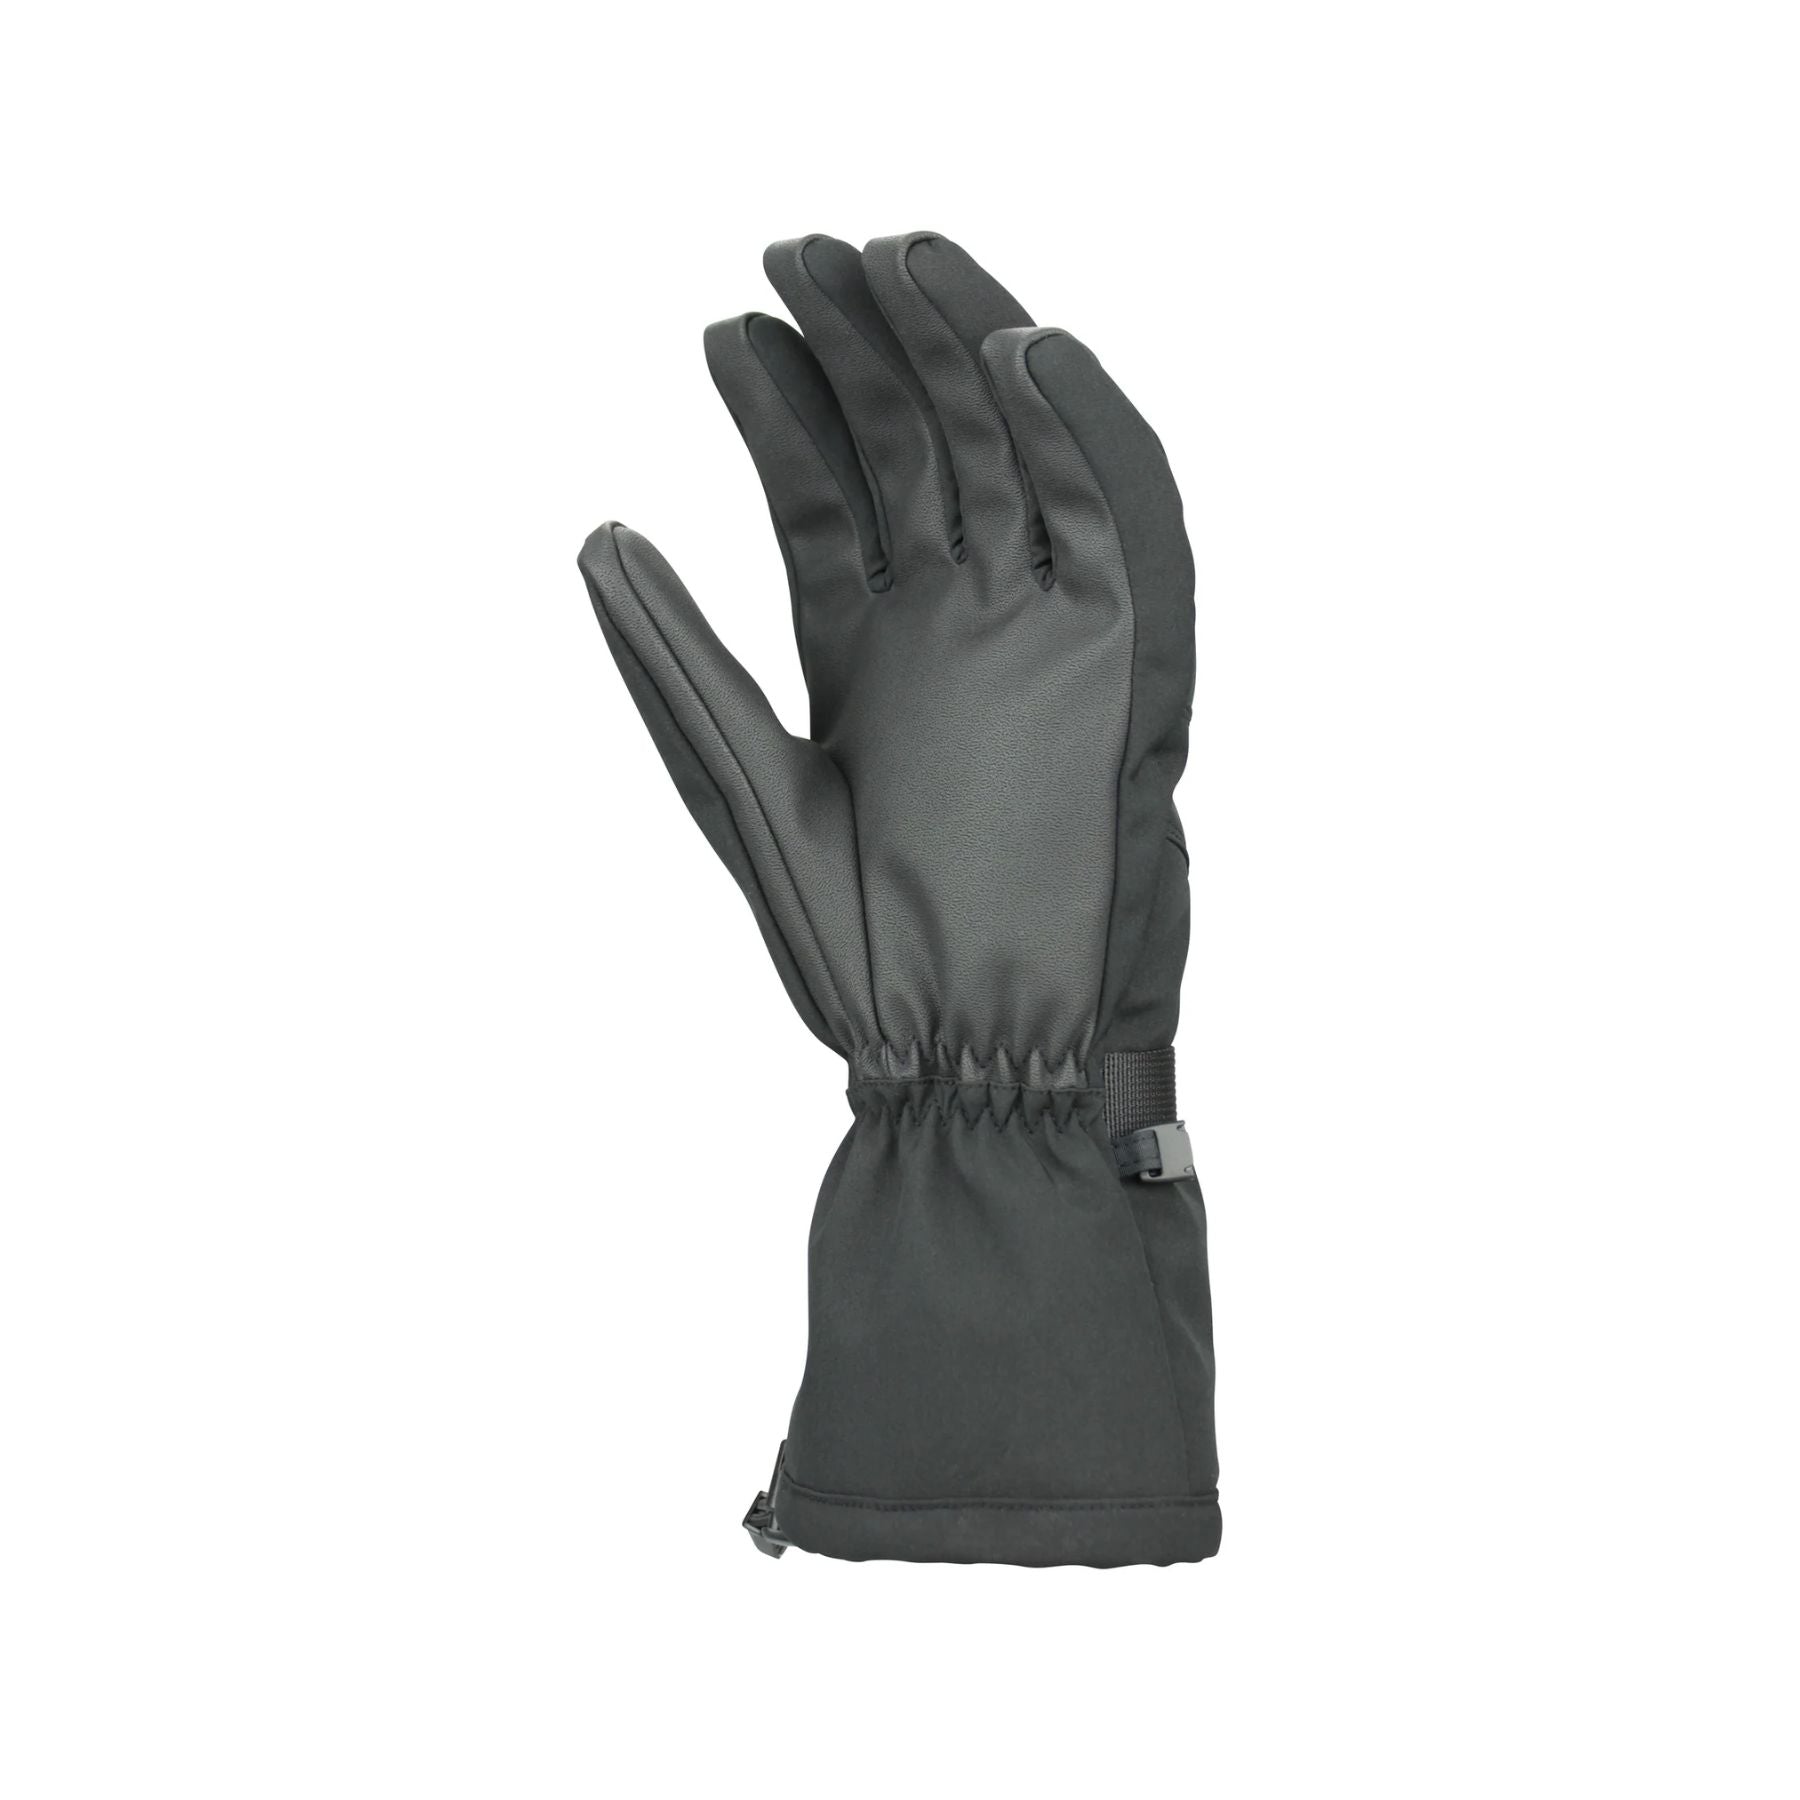 Steiner Kid's Mountain Ski Glove in Black